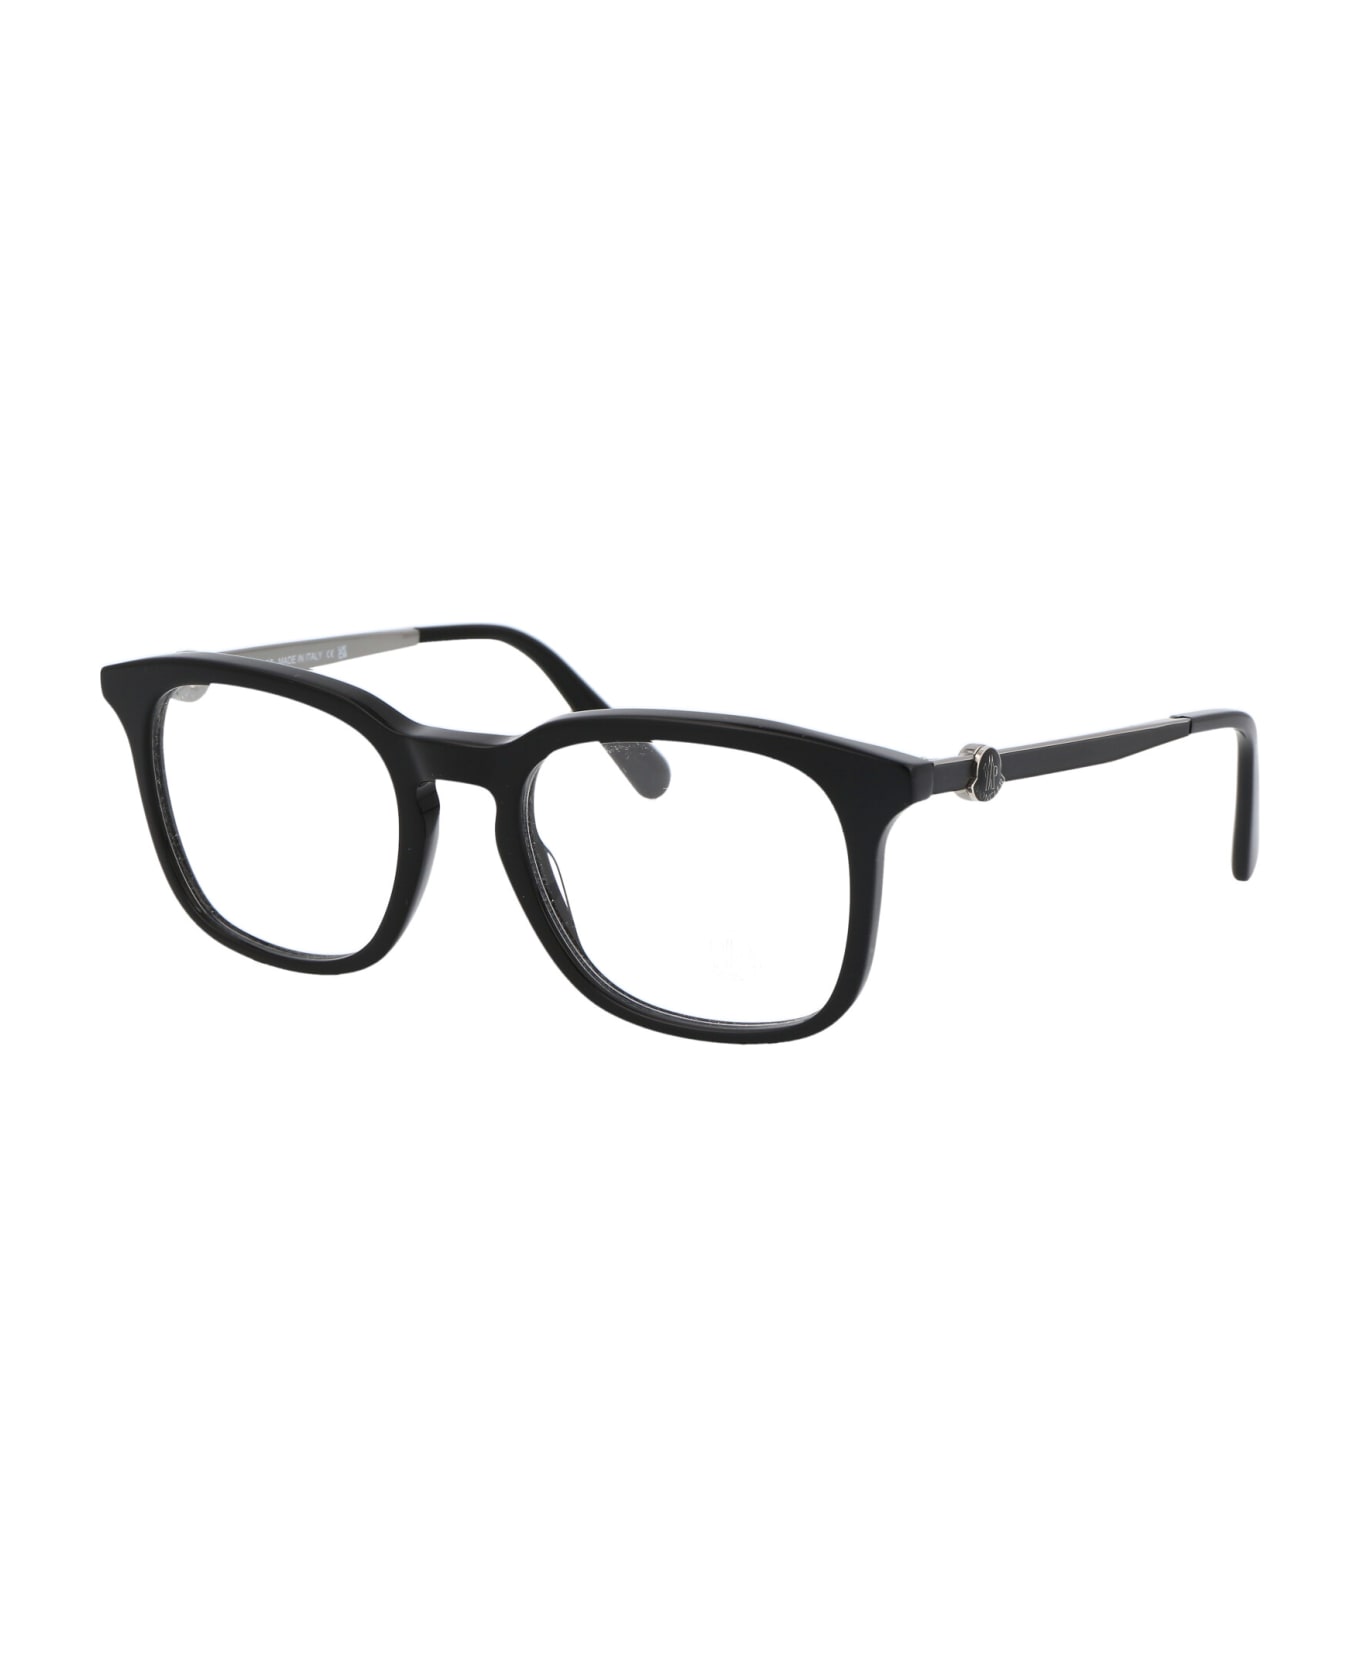 Moncler Eyewear Ml5176 Glasses - 001 Nero Lucido アイウェア